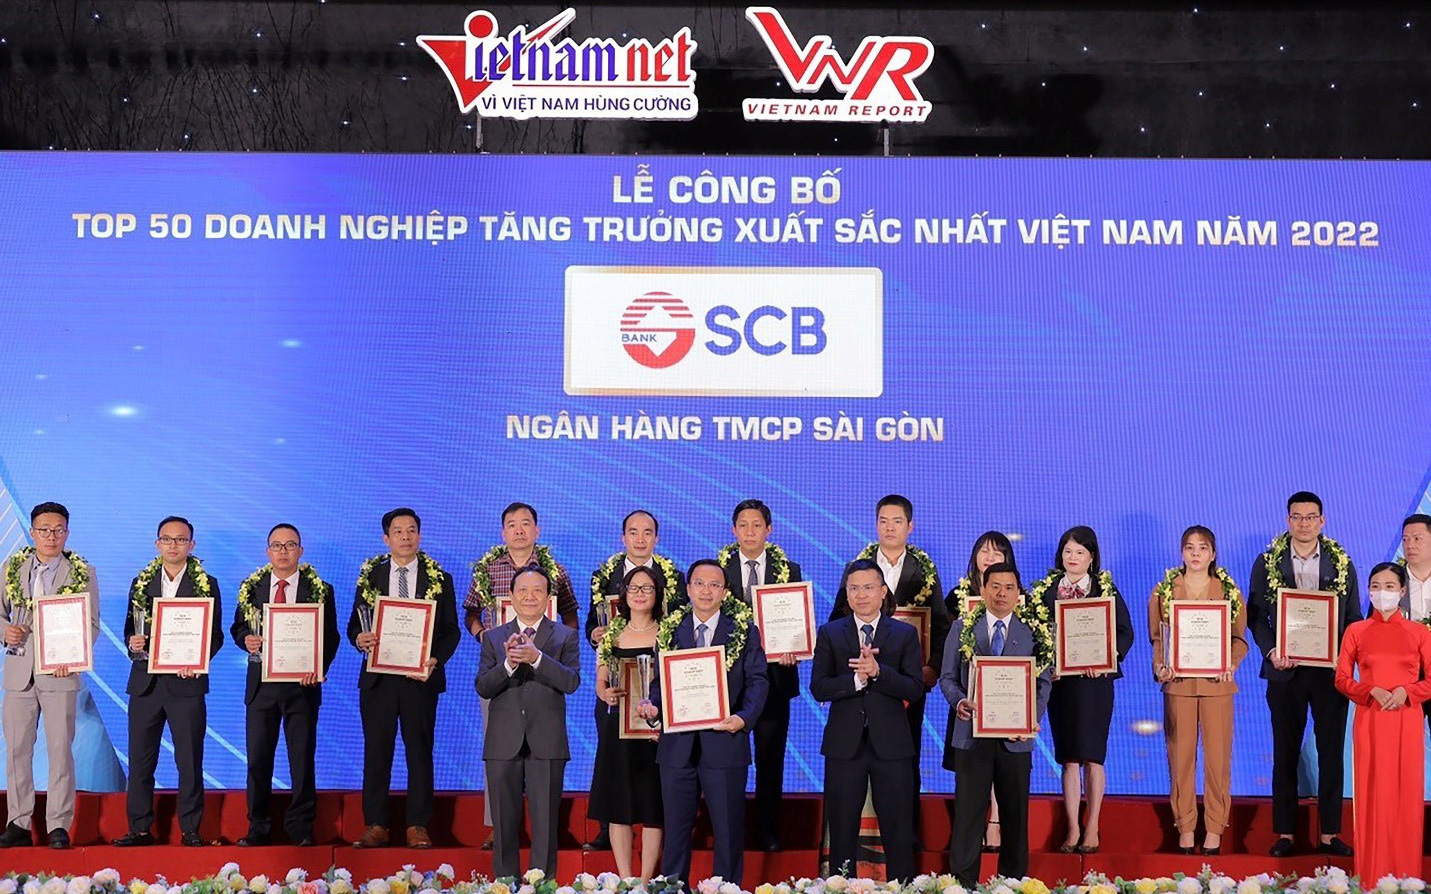 SCB lọt Top 50 doanh nghiệp tăng trưởng xuất sắc nhất Việt Nam